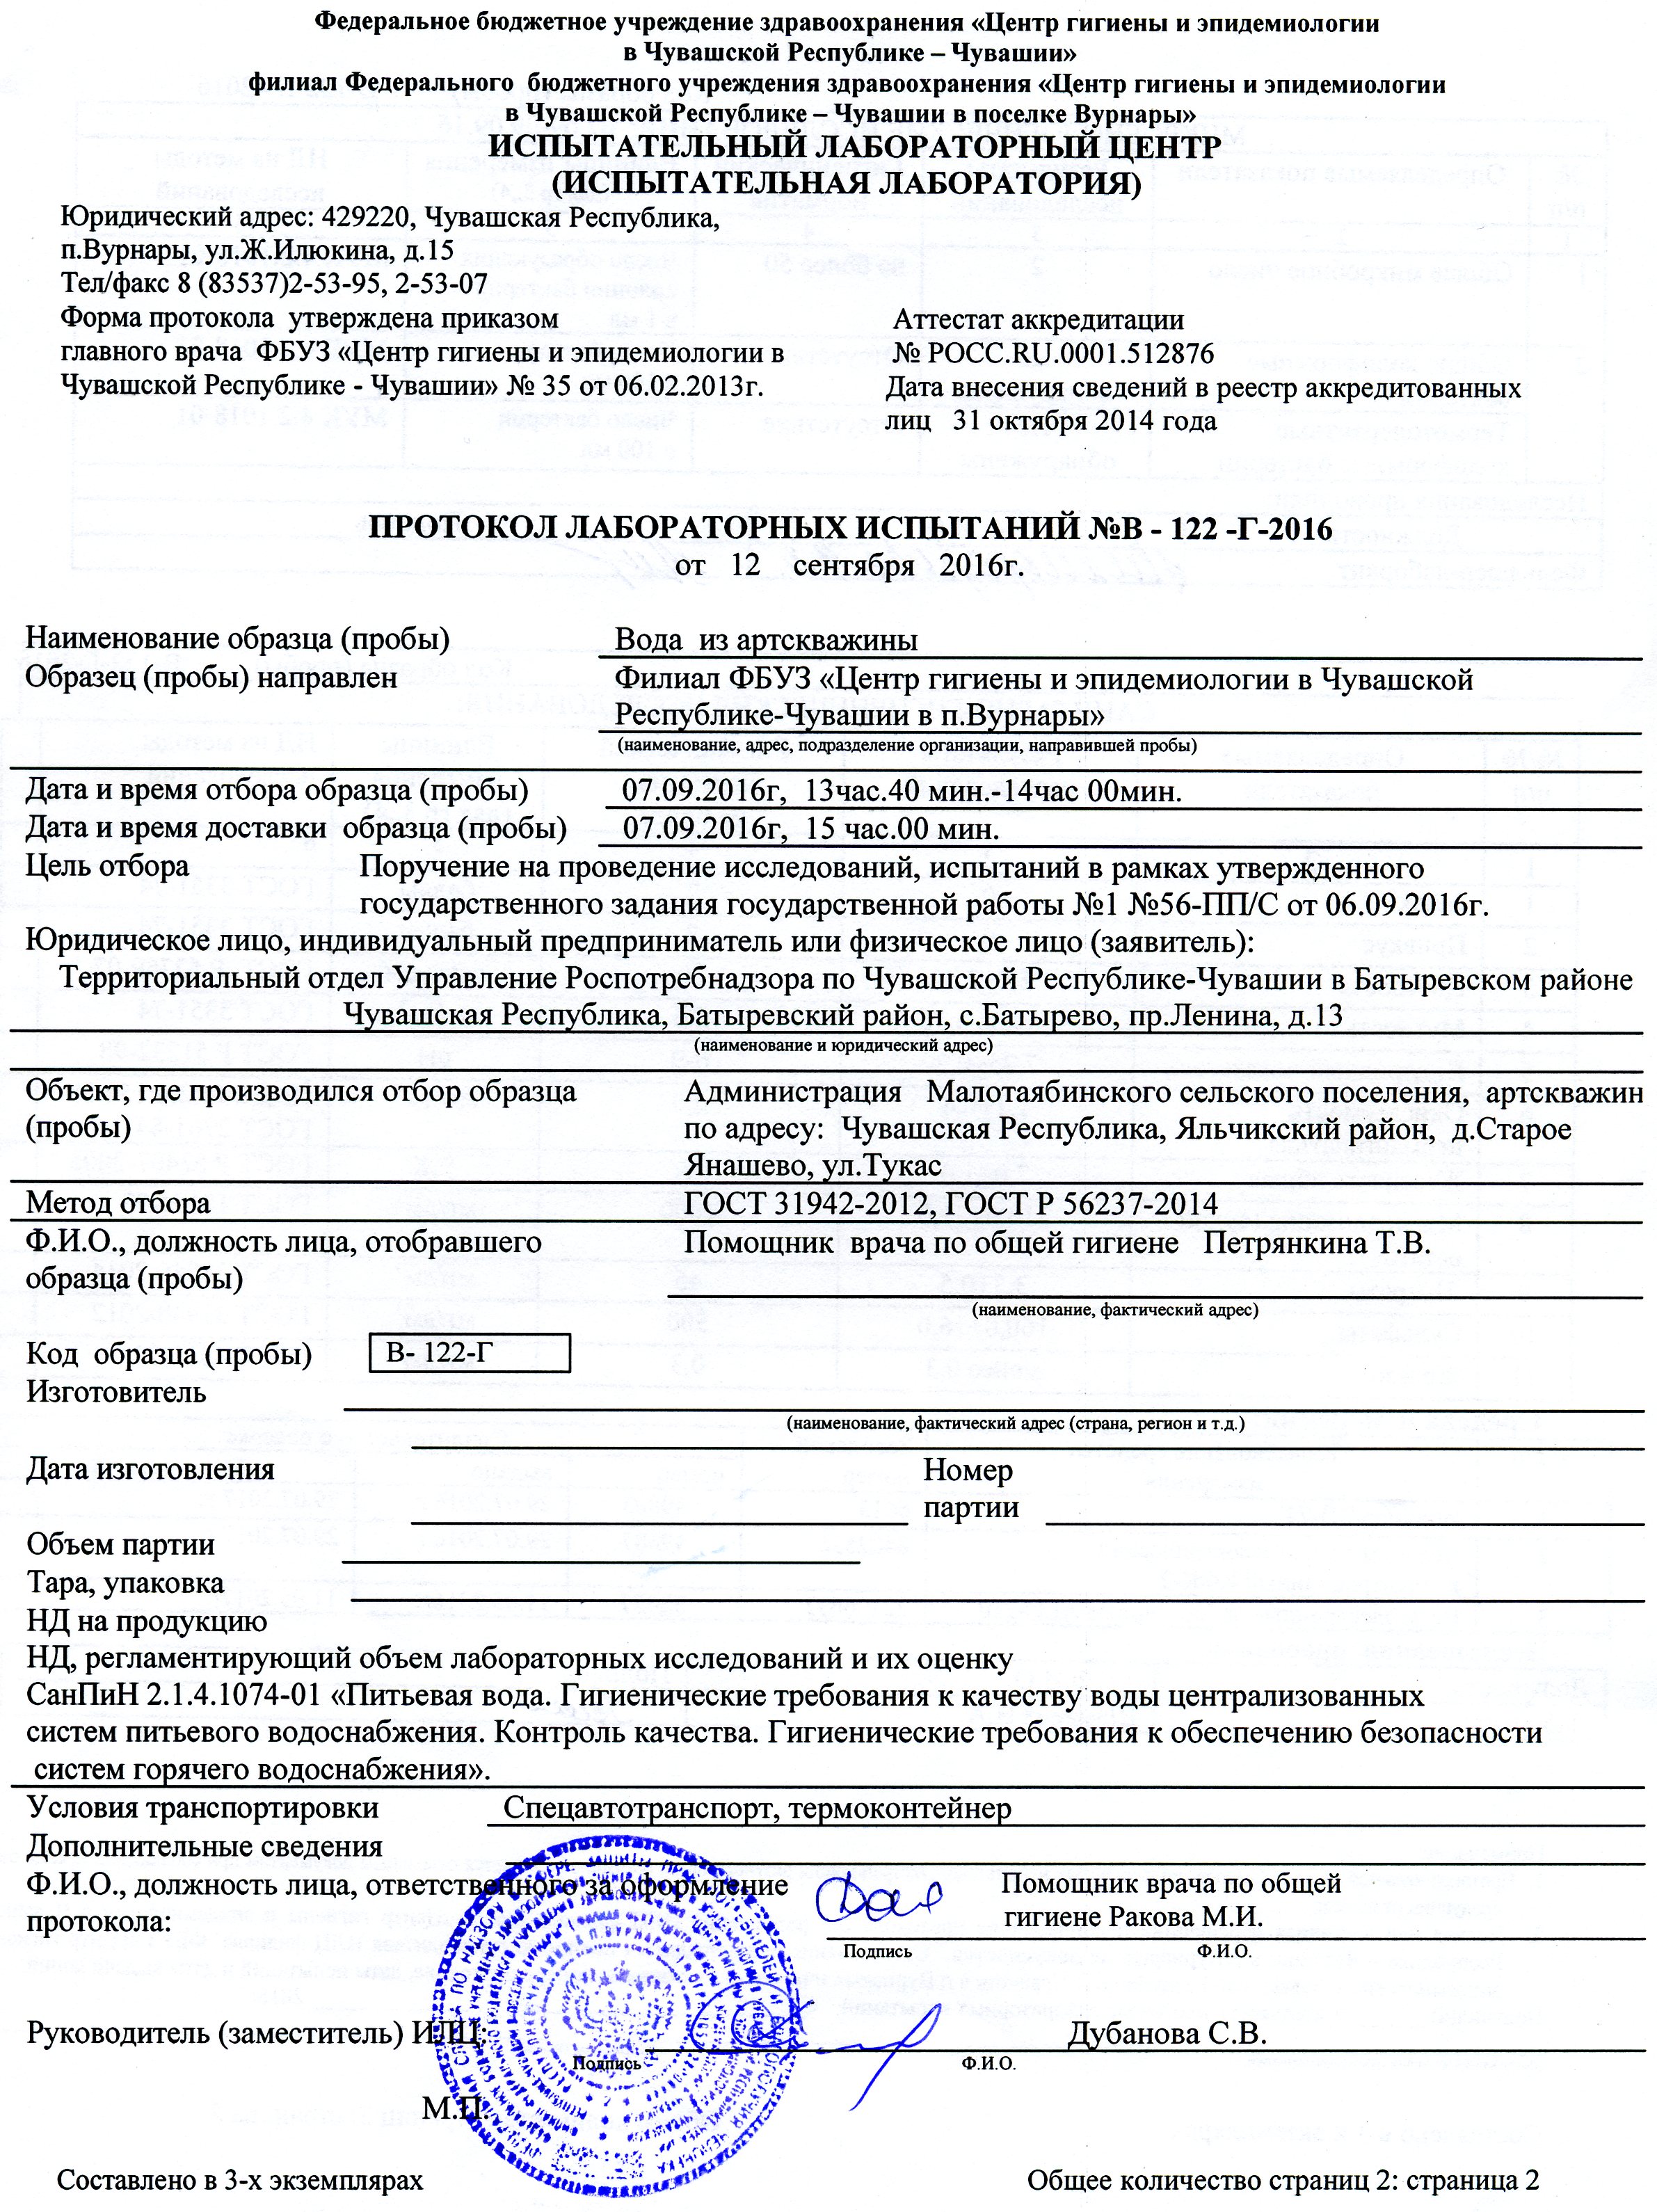 Гигиенические протоколы. Протокол лабораторных испытаний 2021. Протокол лабораторных испытаний русская версия. Протокол испытаний образец испытательной лаборатории. Протокол испытаний по ГОСТ Р 58973-2020.